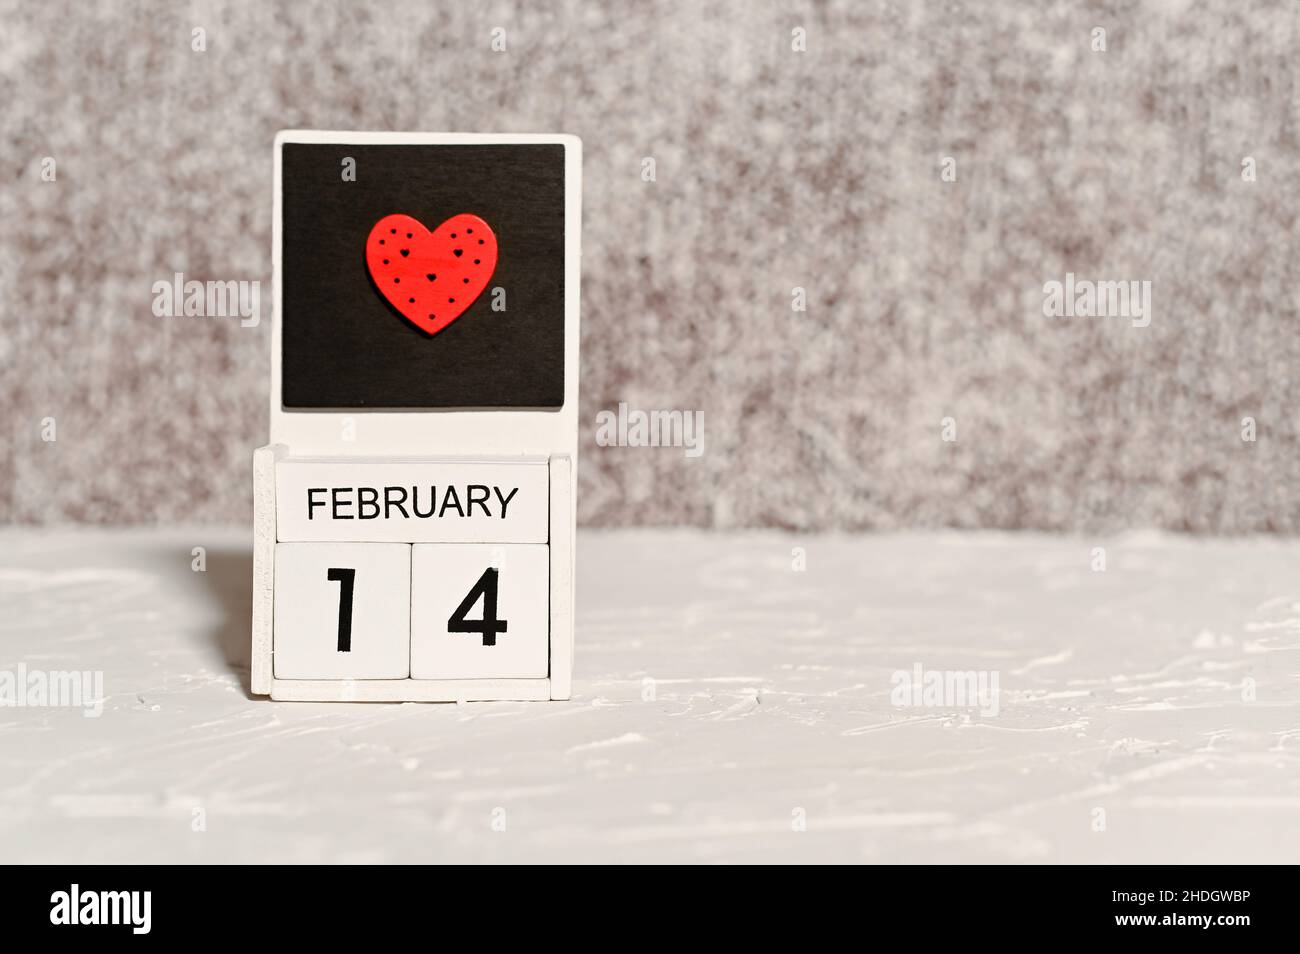 Calendario mostra in legno di febbraio 14 con cuore rosso Foto Stock